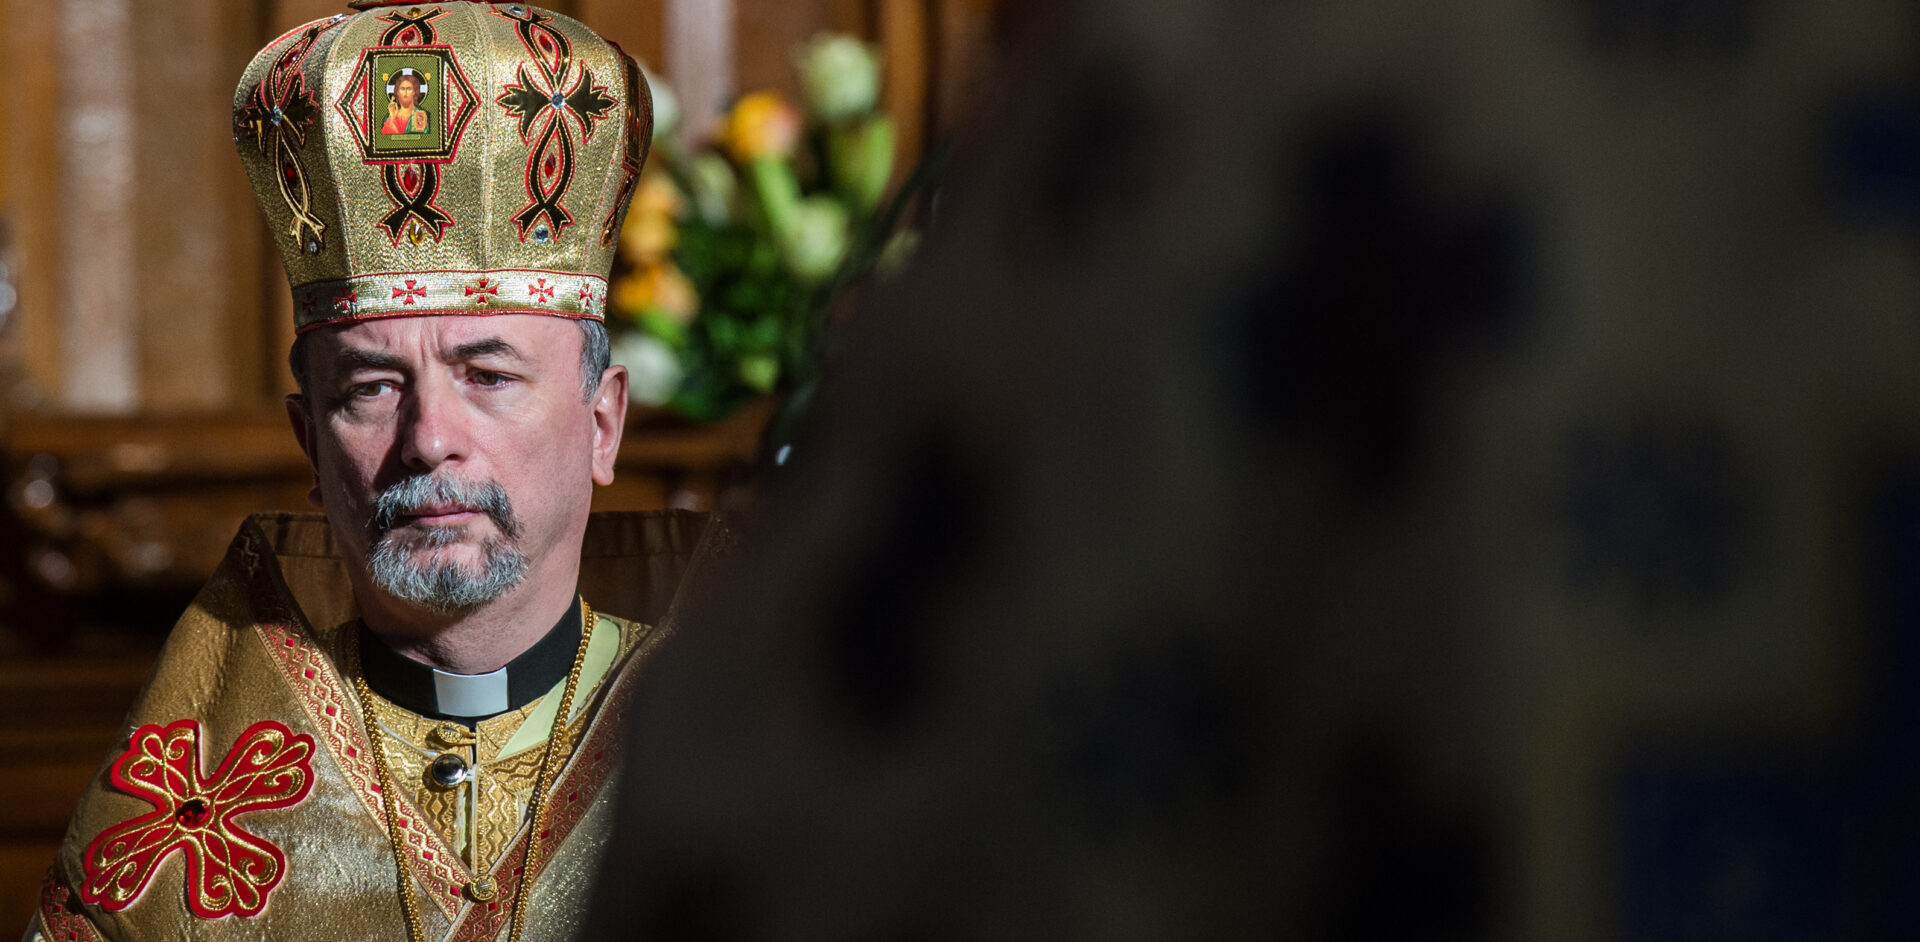 L'archevêque slovaque Cyril Vasil a été chargé par le pape François de résoudre la crise liturgique en Inde | © Catholic Church of England and Wales/Flickr/CC BY-NC-ND 2.0